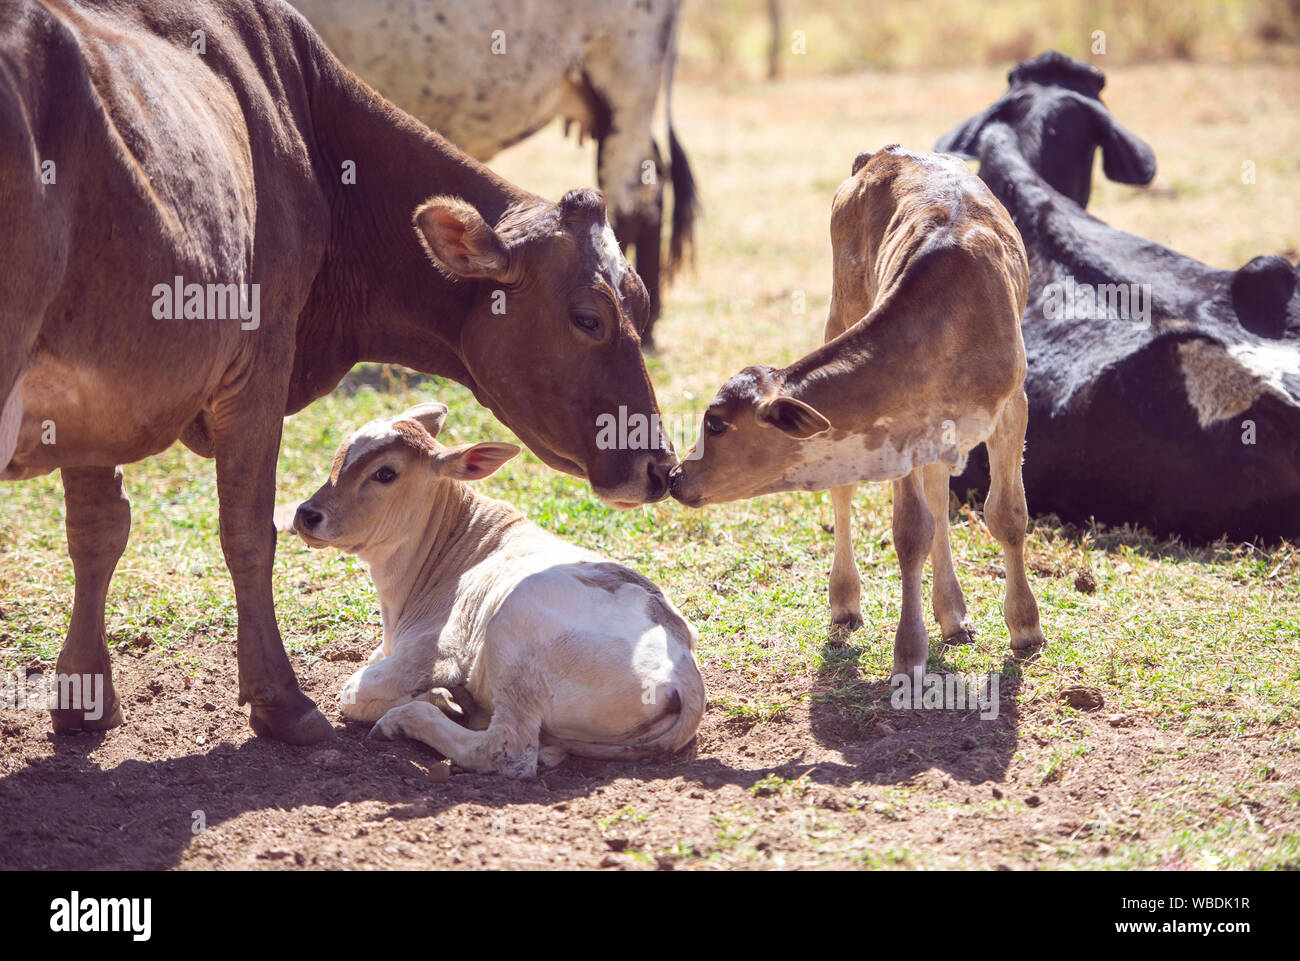 Imagen rural. La madre vaca teniendo cuidado de recién nacidos. Concepto de imagen la vida agrícola. Foto de stock